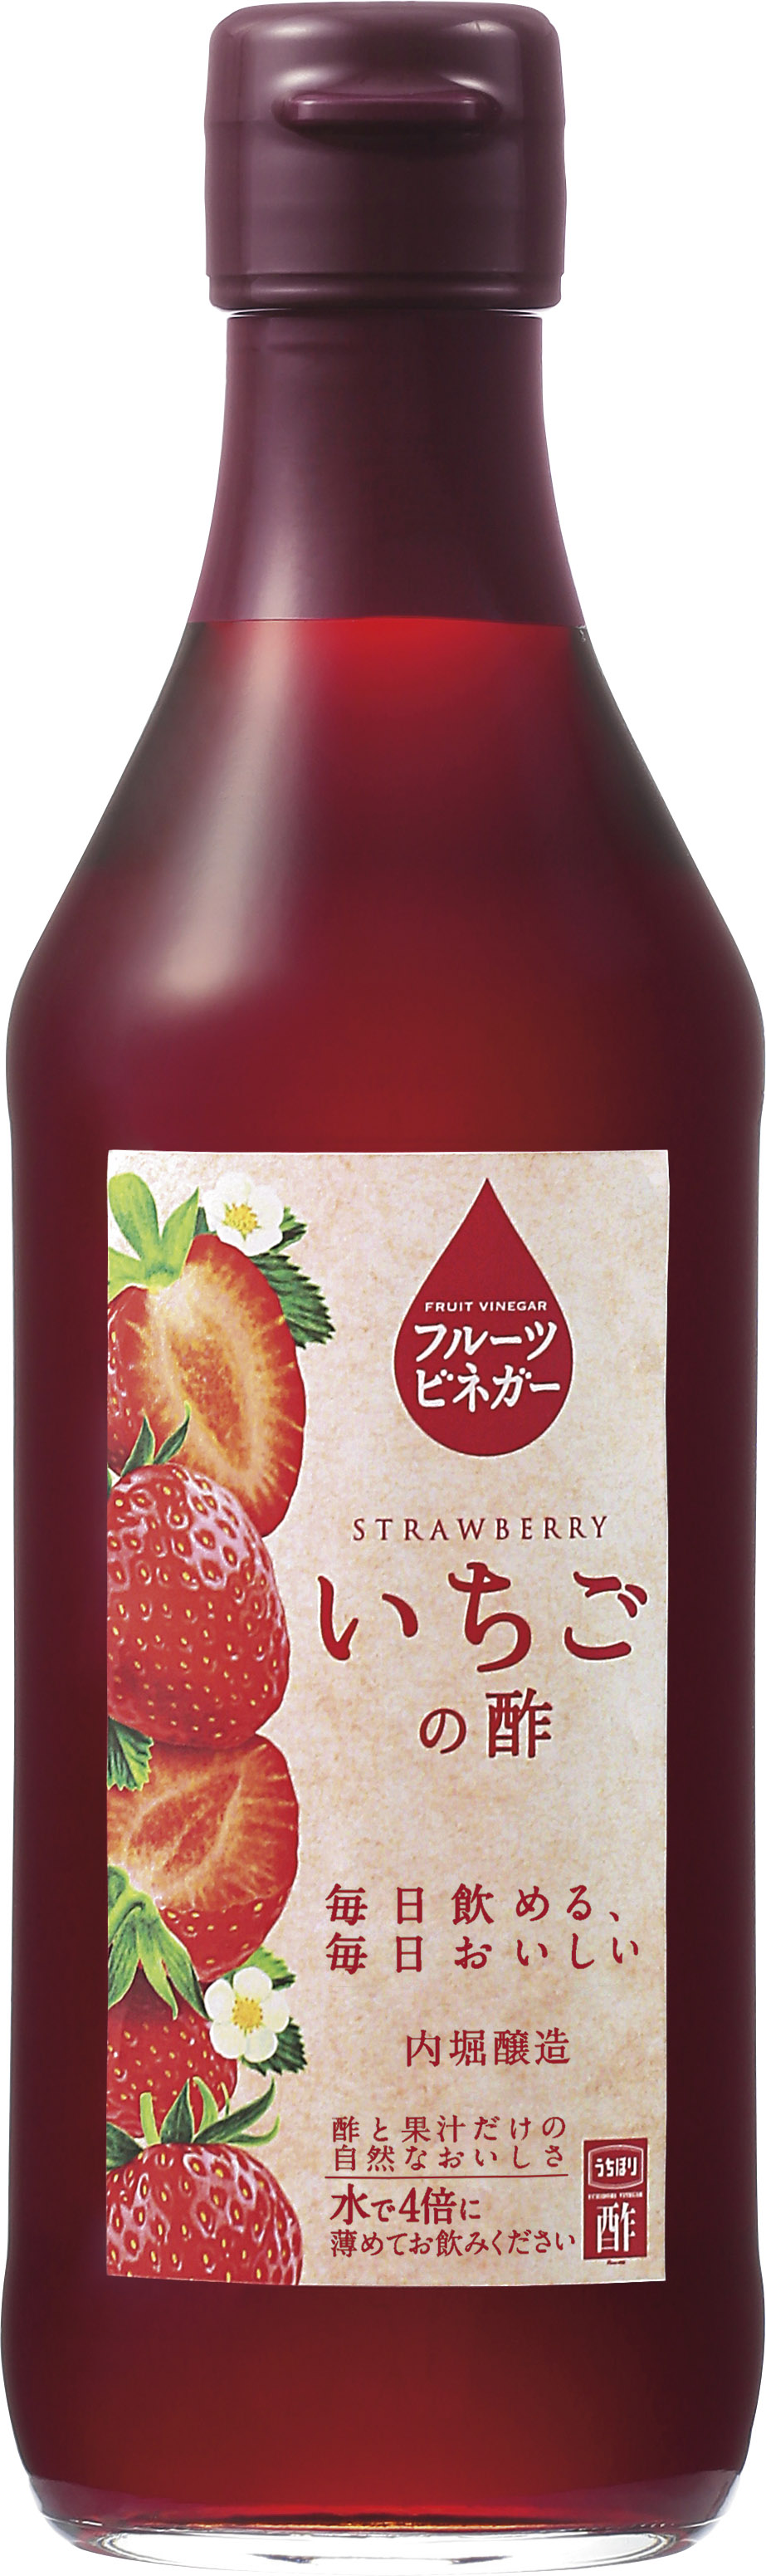 フルーツビネガーいちごの酢の商品画像